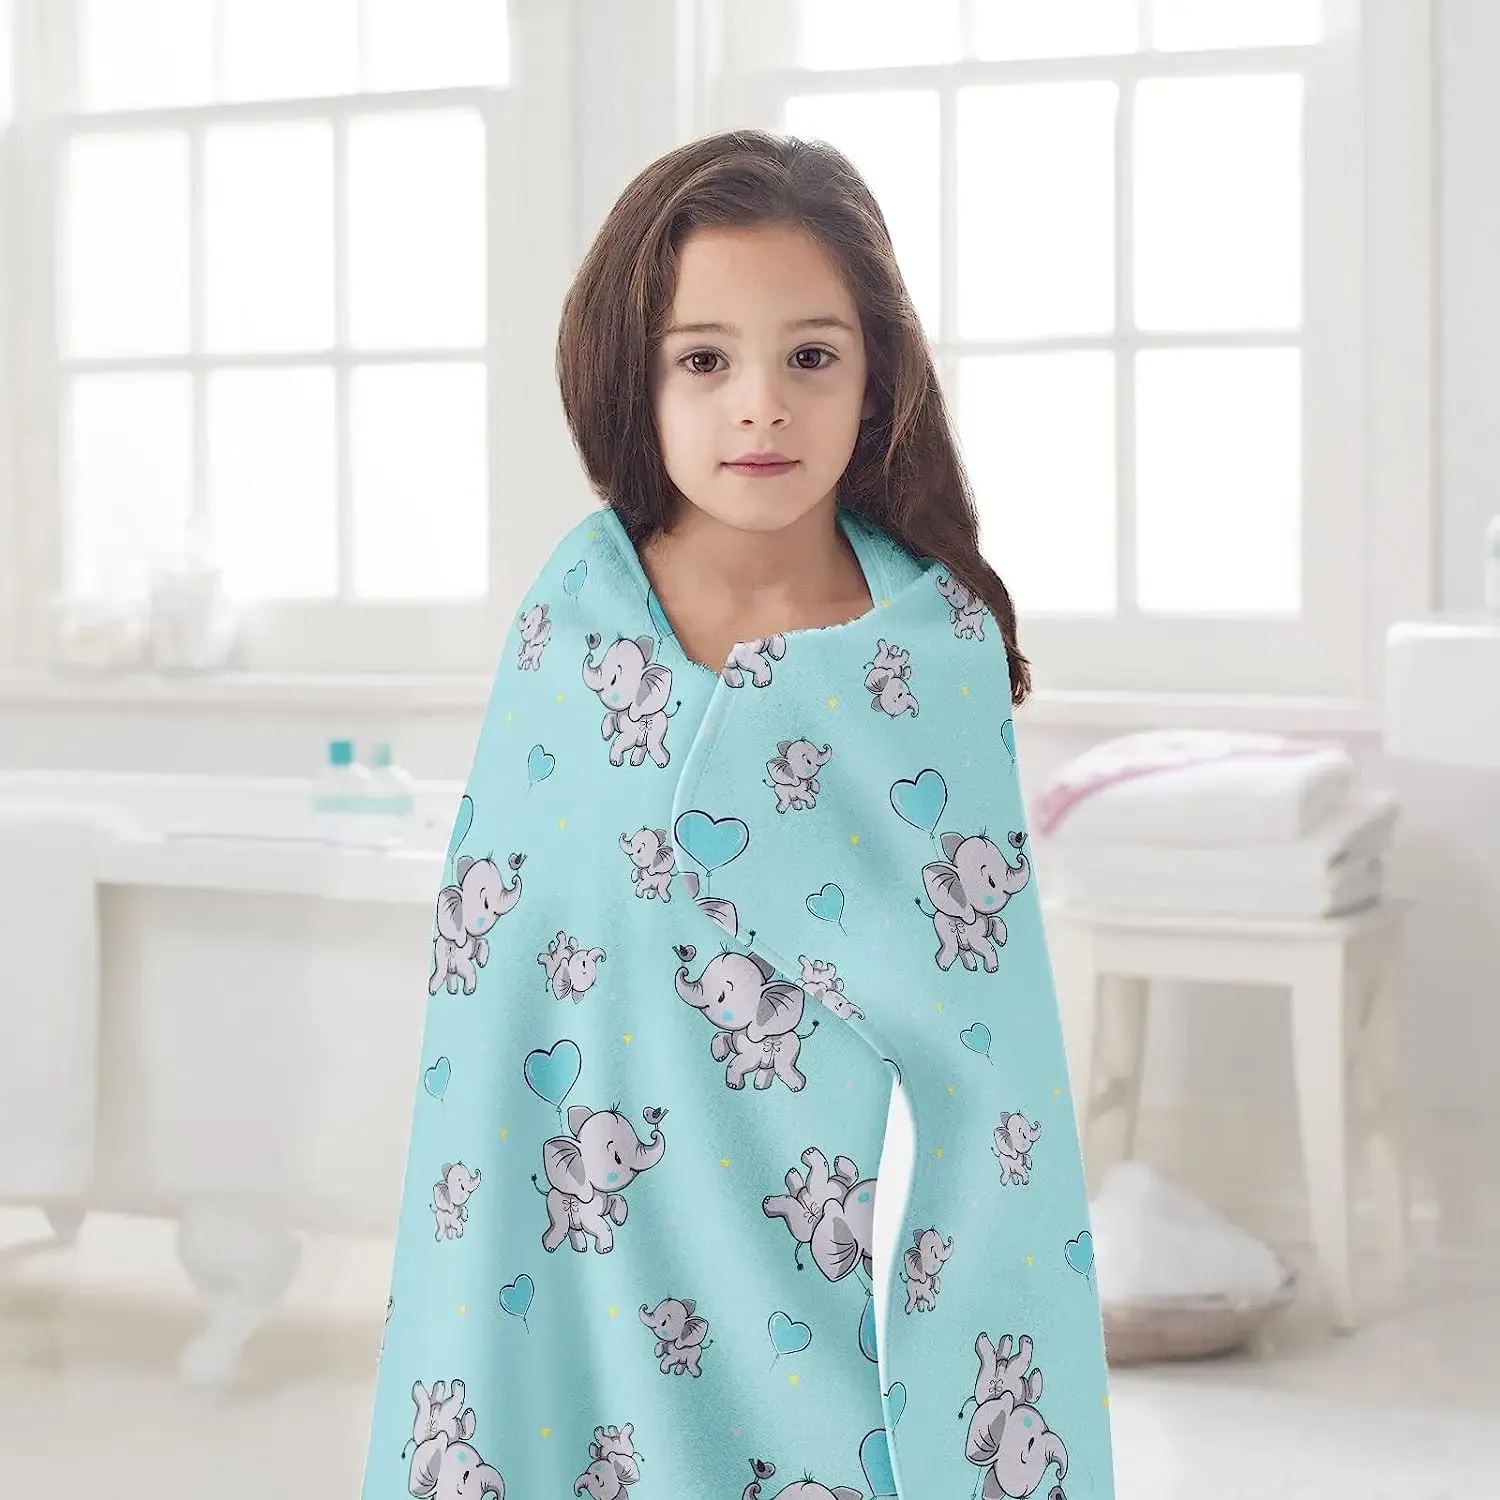 Elefantwurfdecke für Jungen, weiche Flanellblaue Elefant -Kleinkinddecke, gedruckte Tier wirft Decken für Kinder